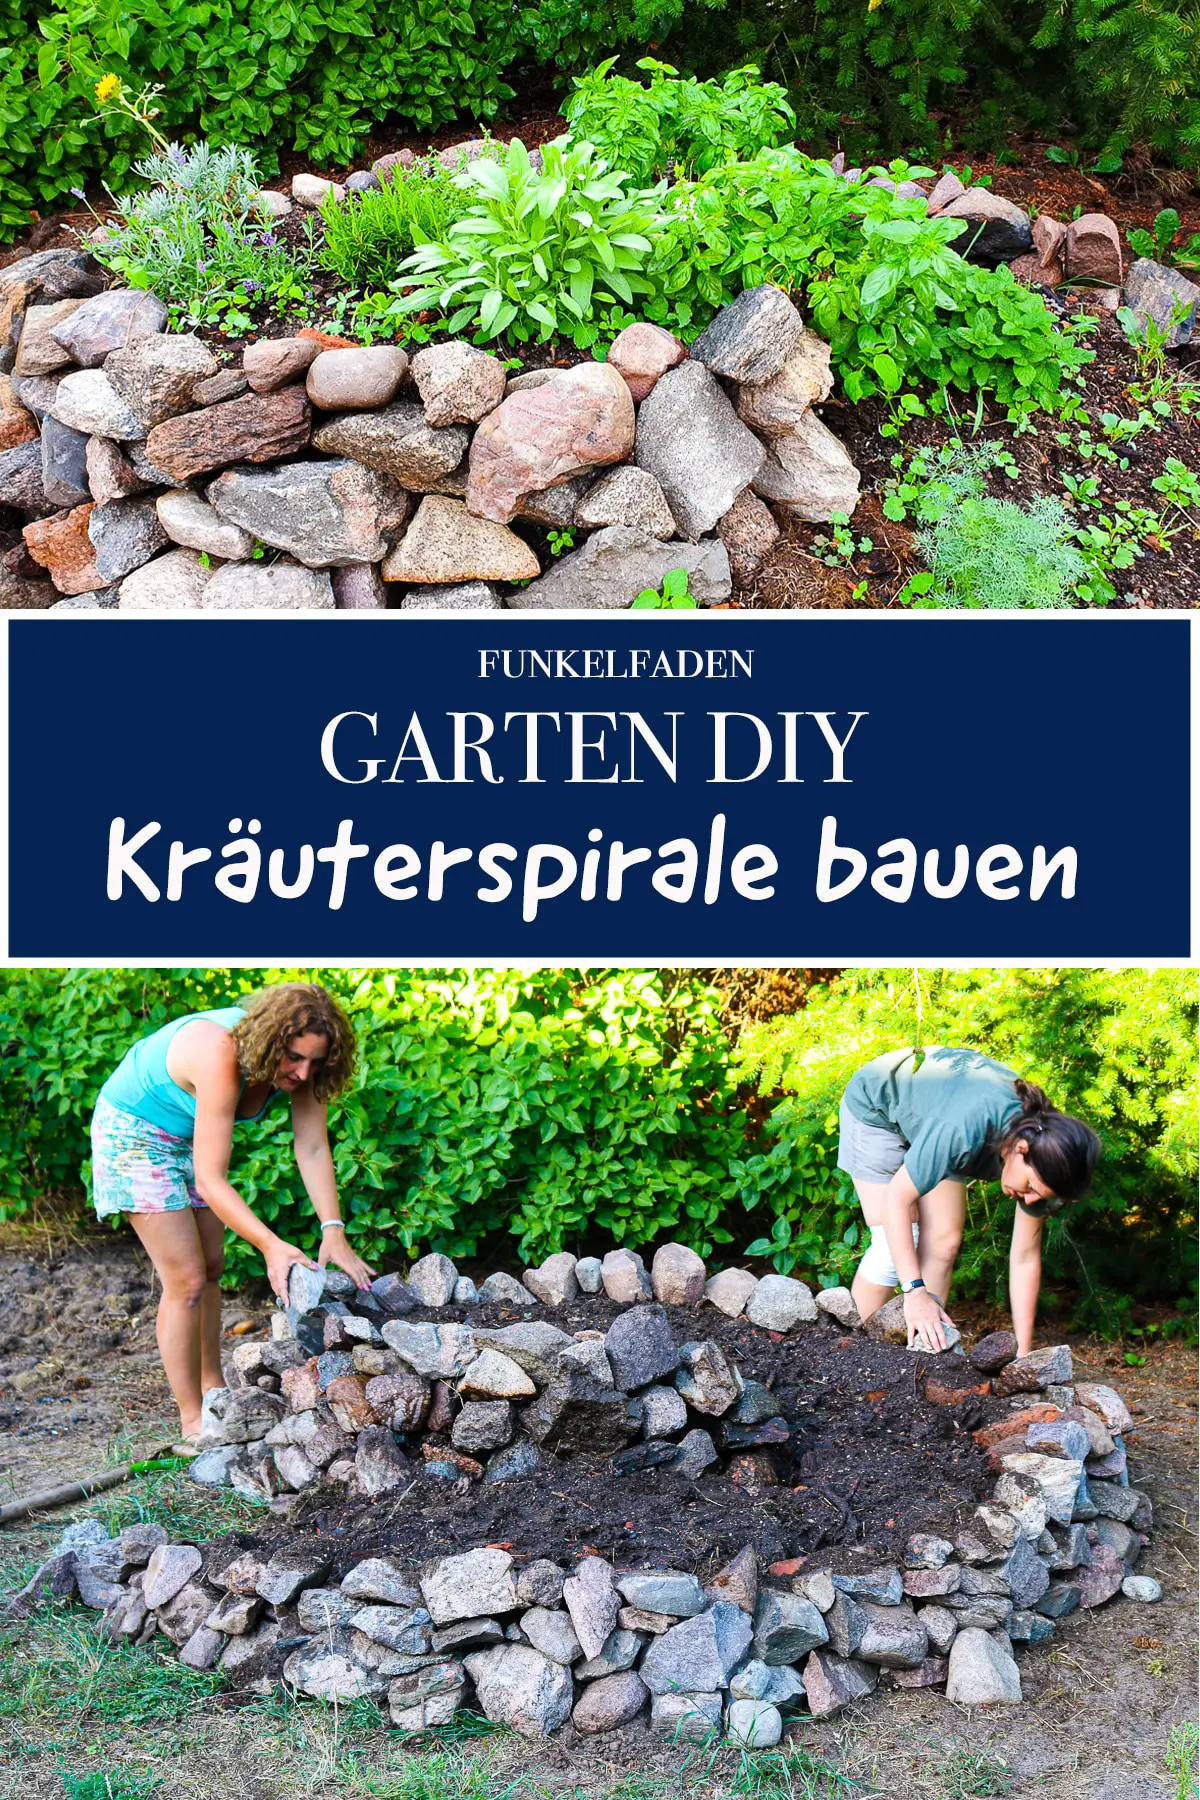 DIY – Kräuterspirale bauen im Garten